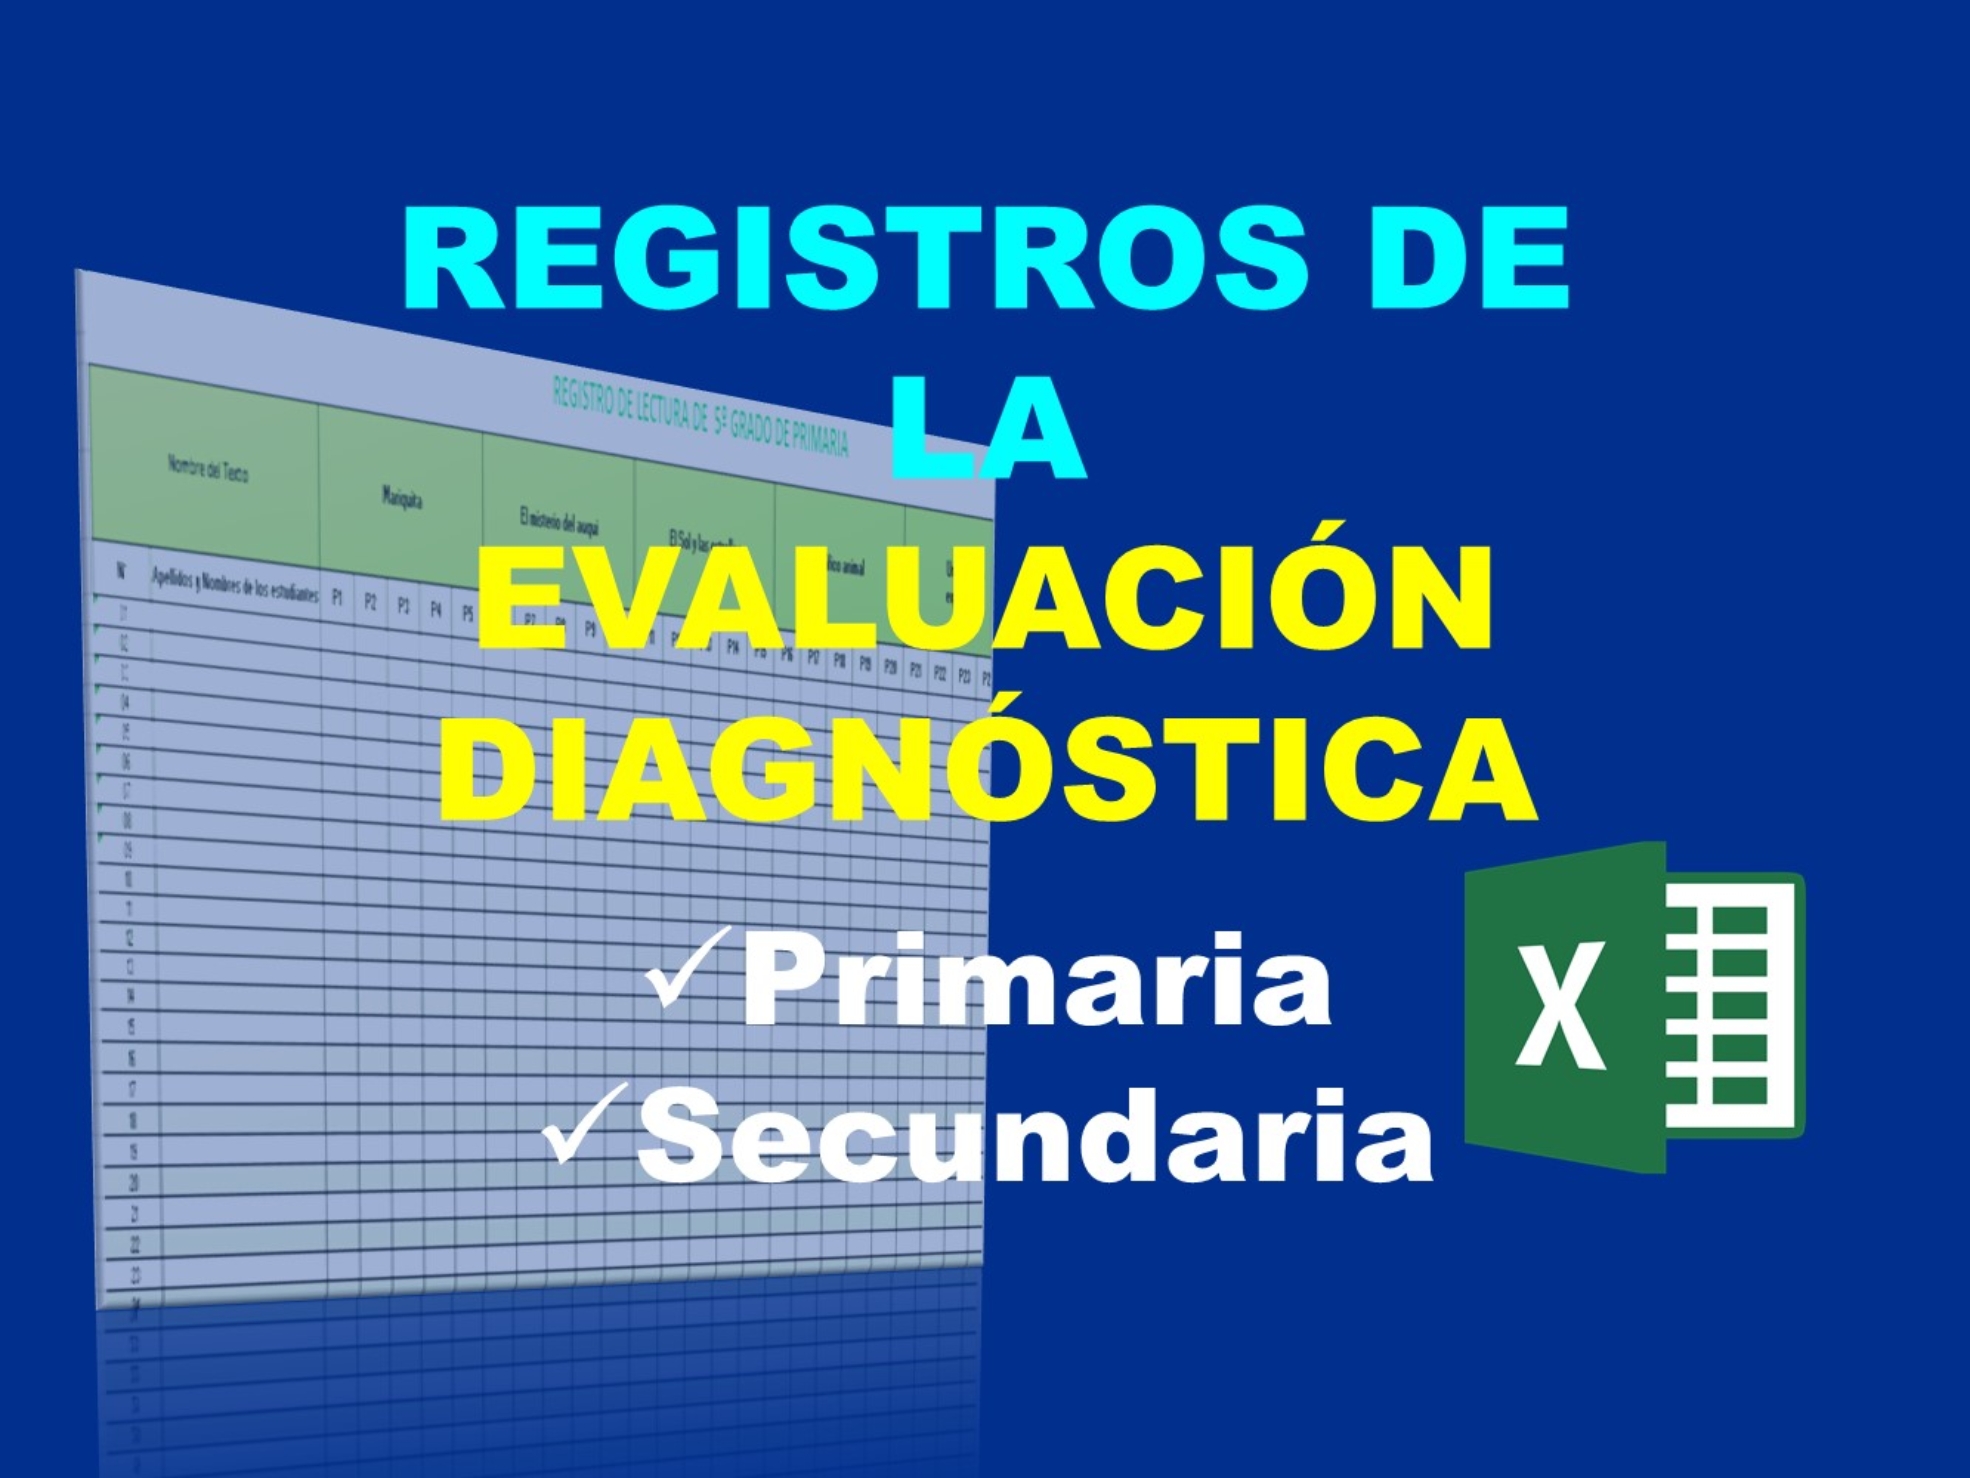 Registros de la evaluación diagnóstica de primaria y secundaria